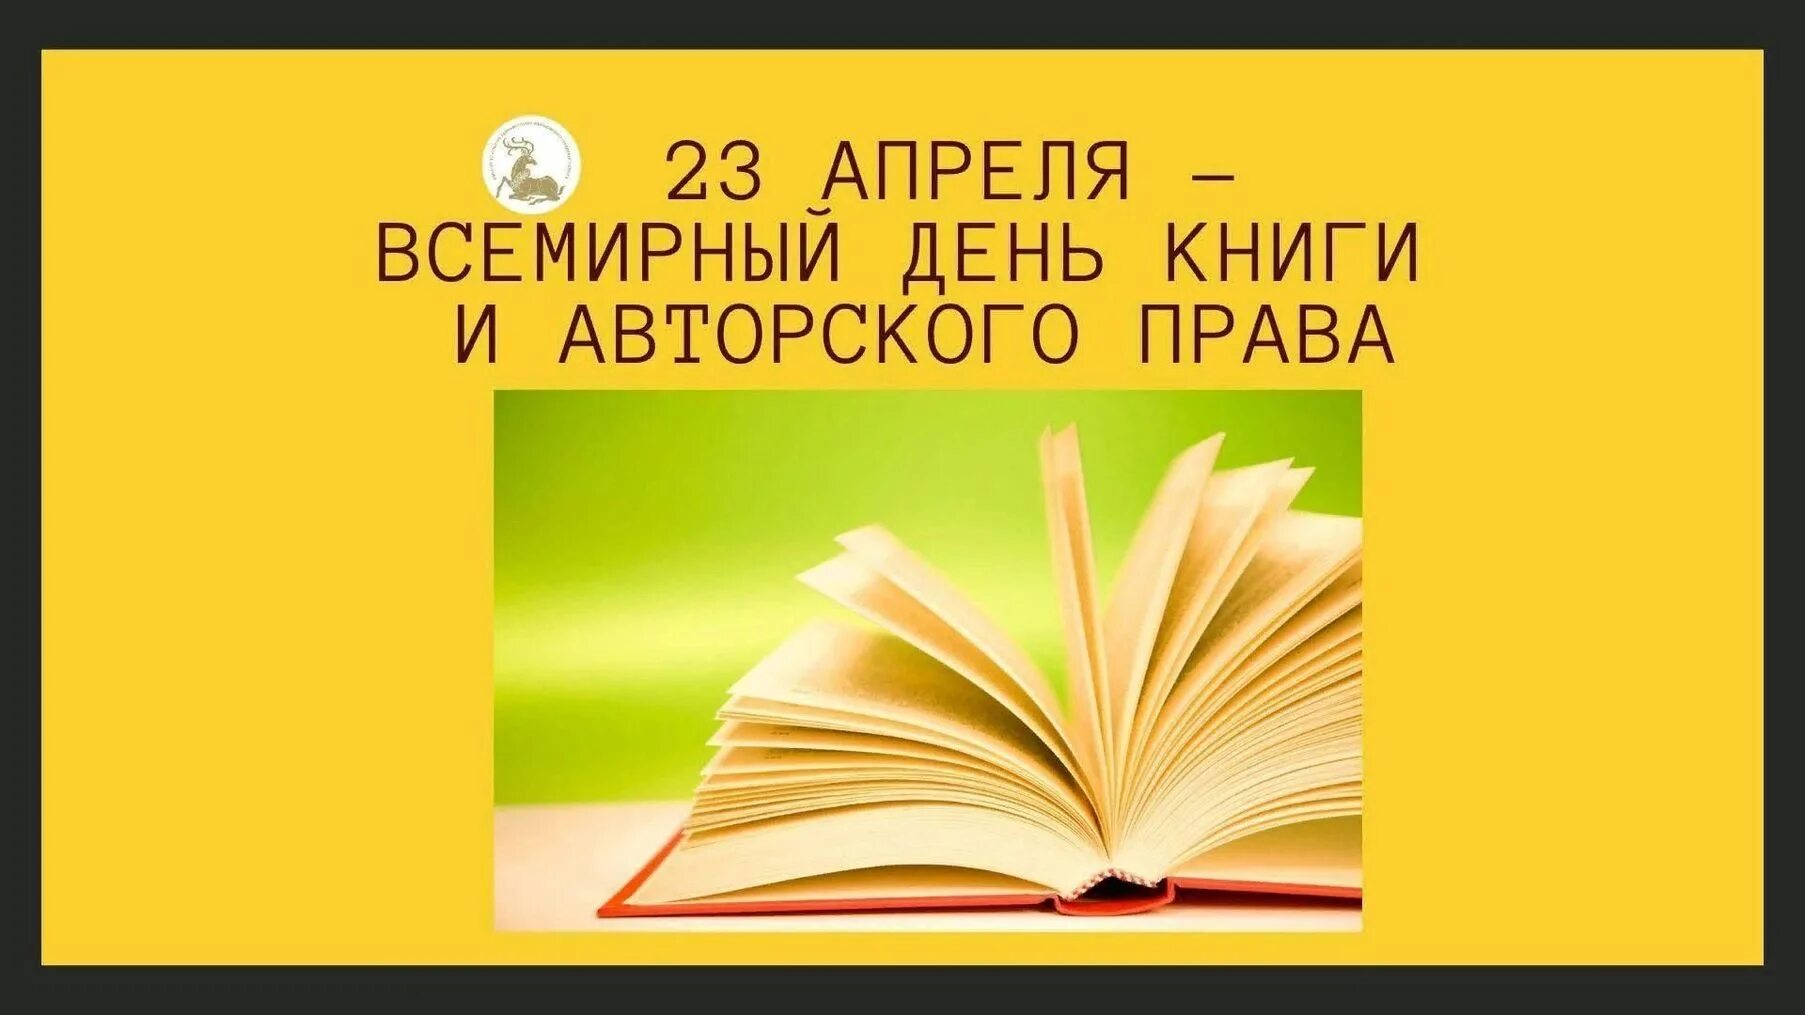 23 апреля день прав. День книги. Всемирный день книги. 23 Апреля Всемирный день книги.